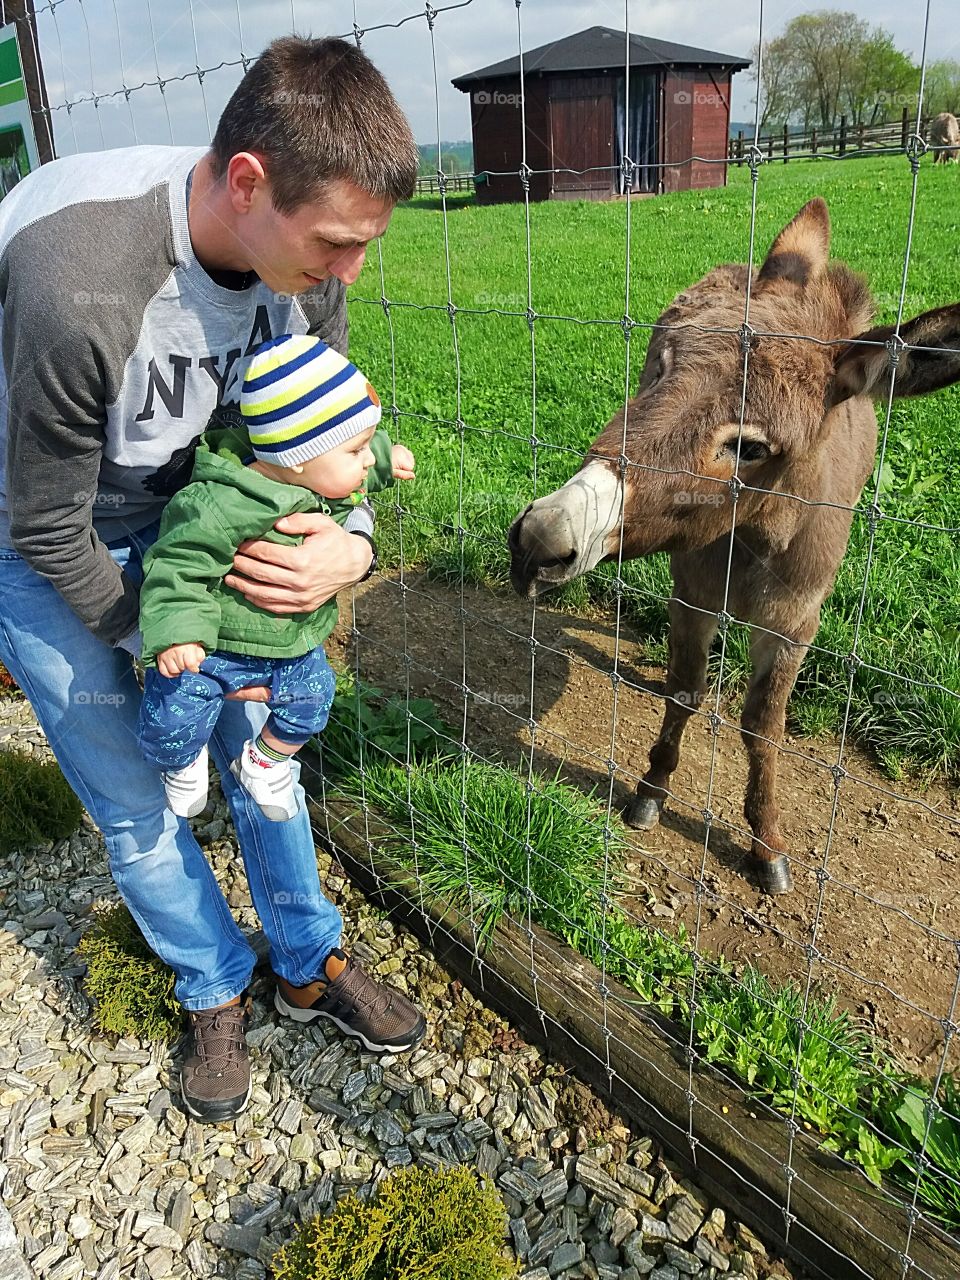 With donkey